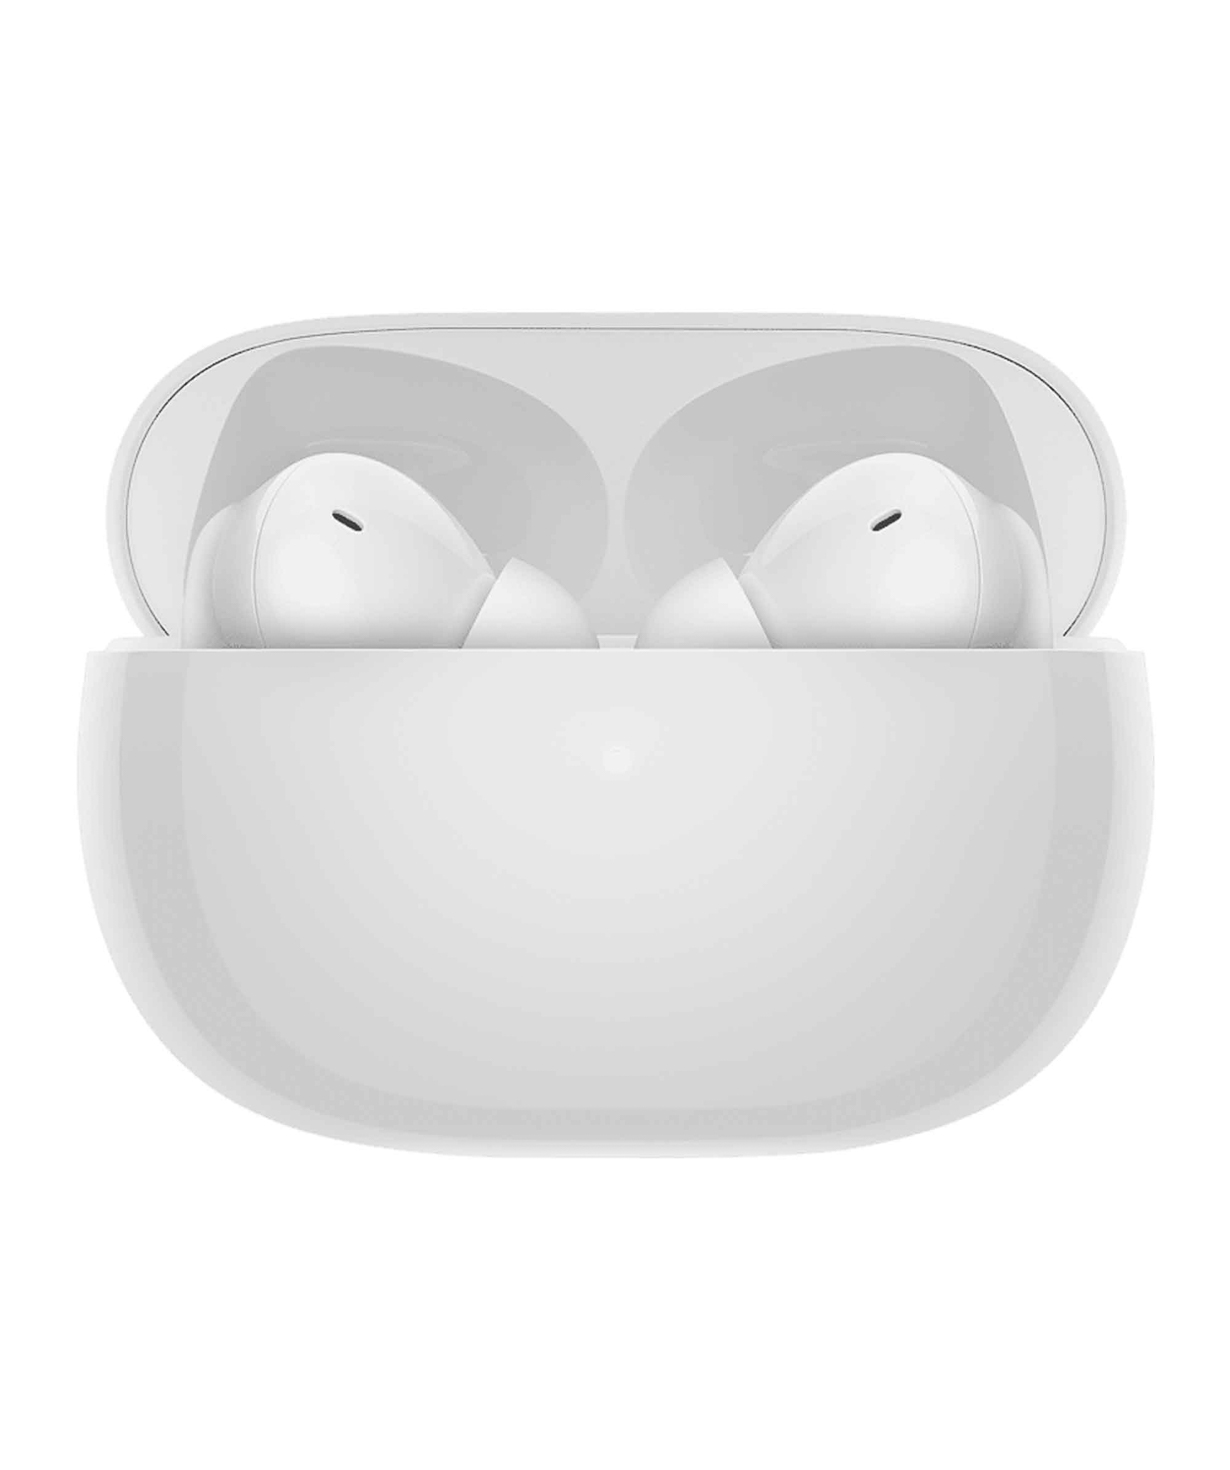 Անլար ականջակալներ «Xiaomi Redmi» 4 Pro, սպիտակ